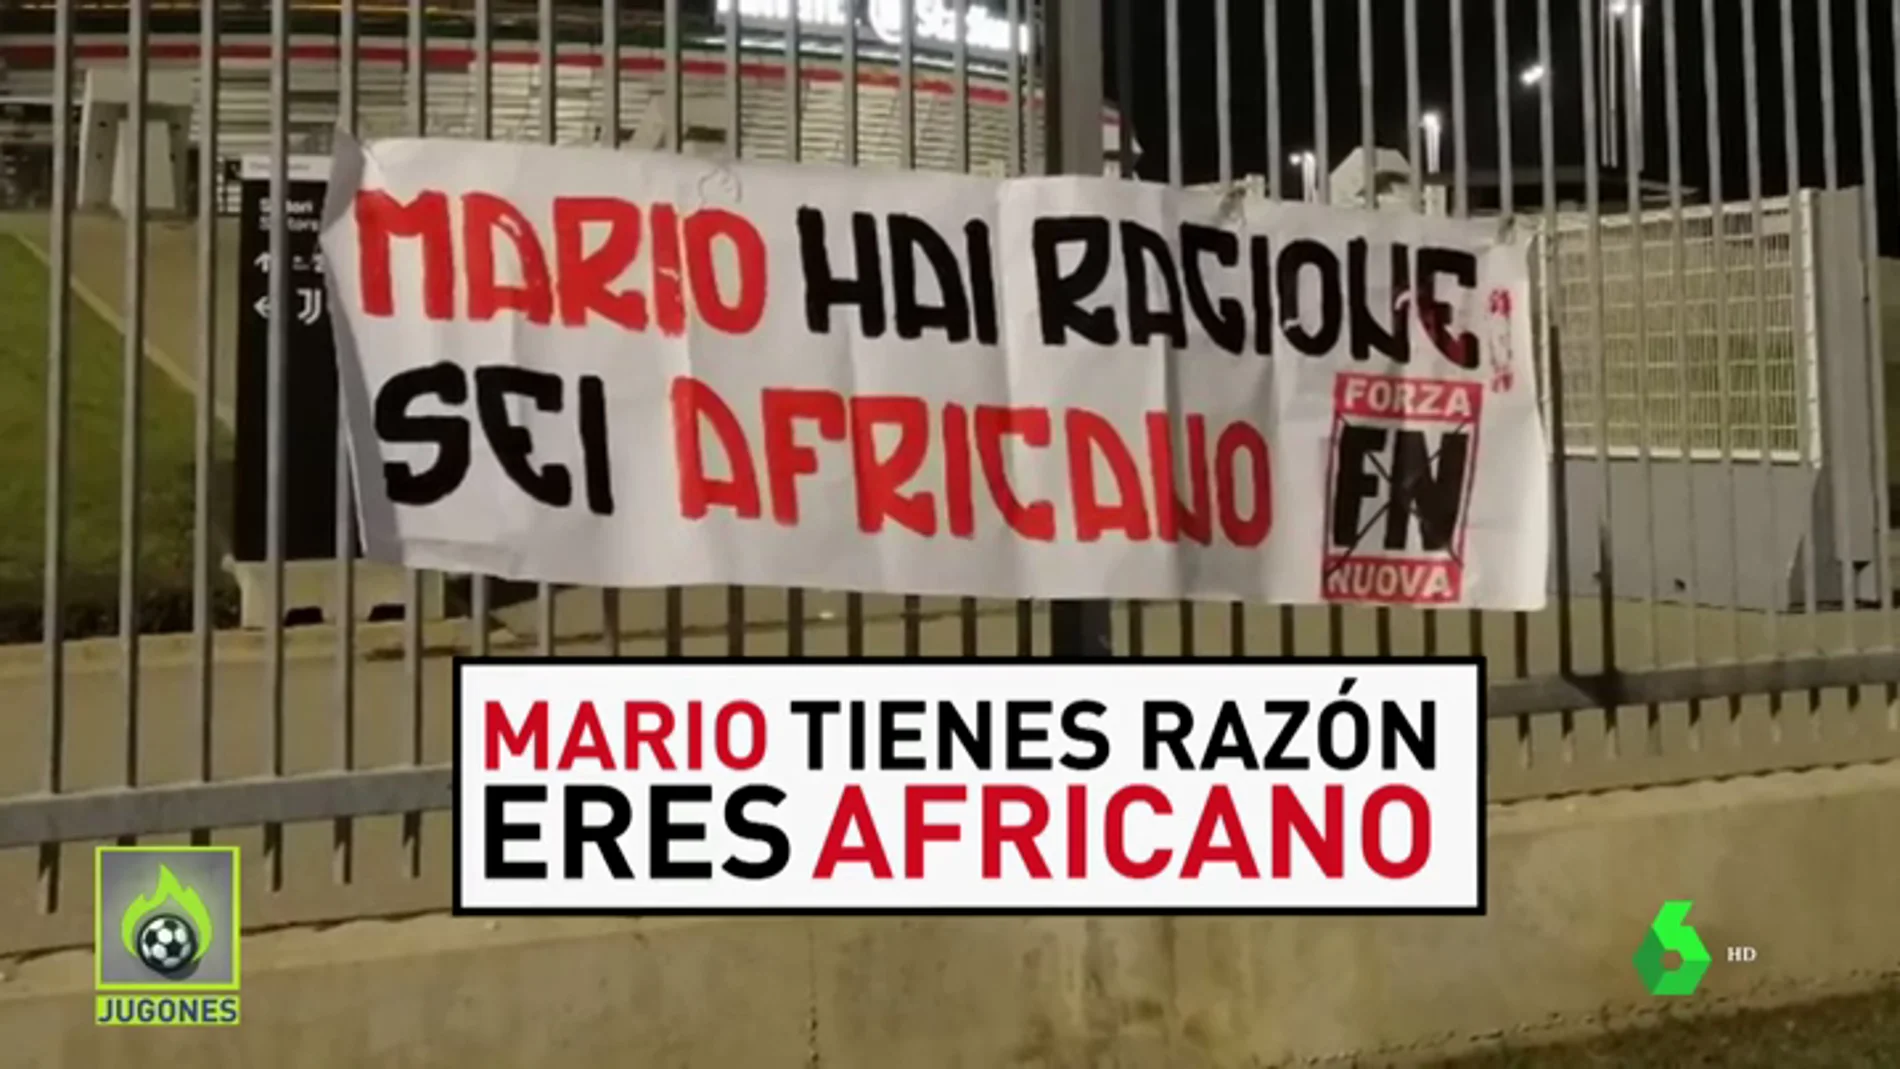 Nuevo ataque racista contra Balotelli en Turín: "Eres africano"